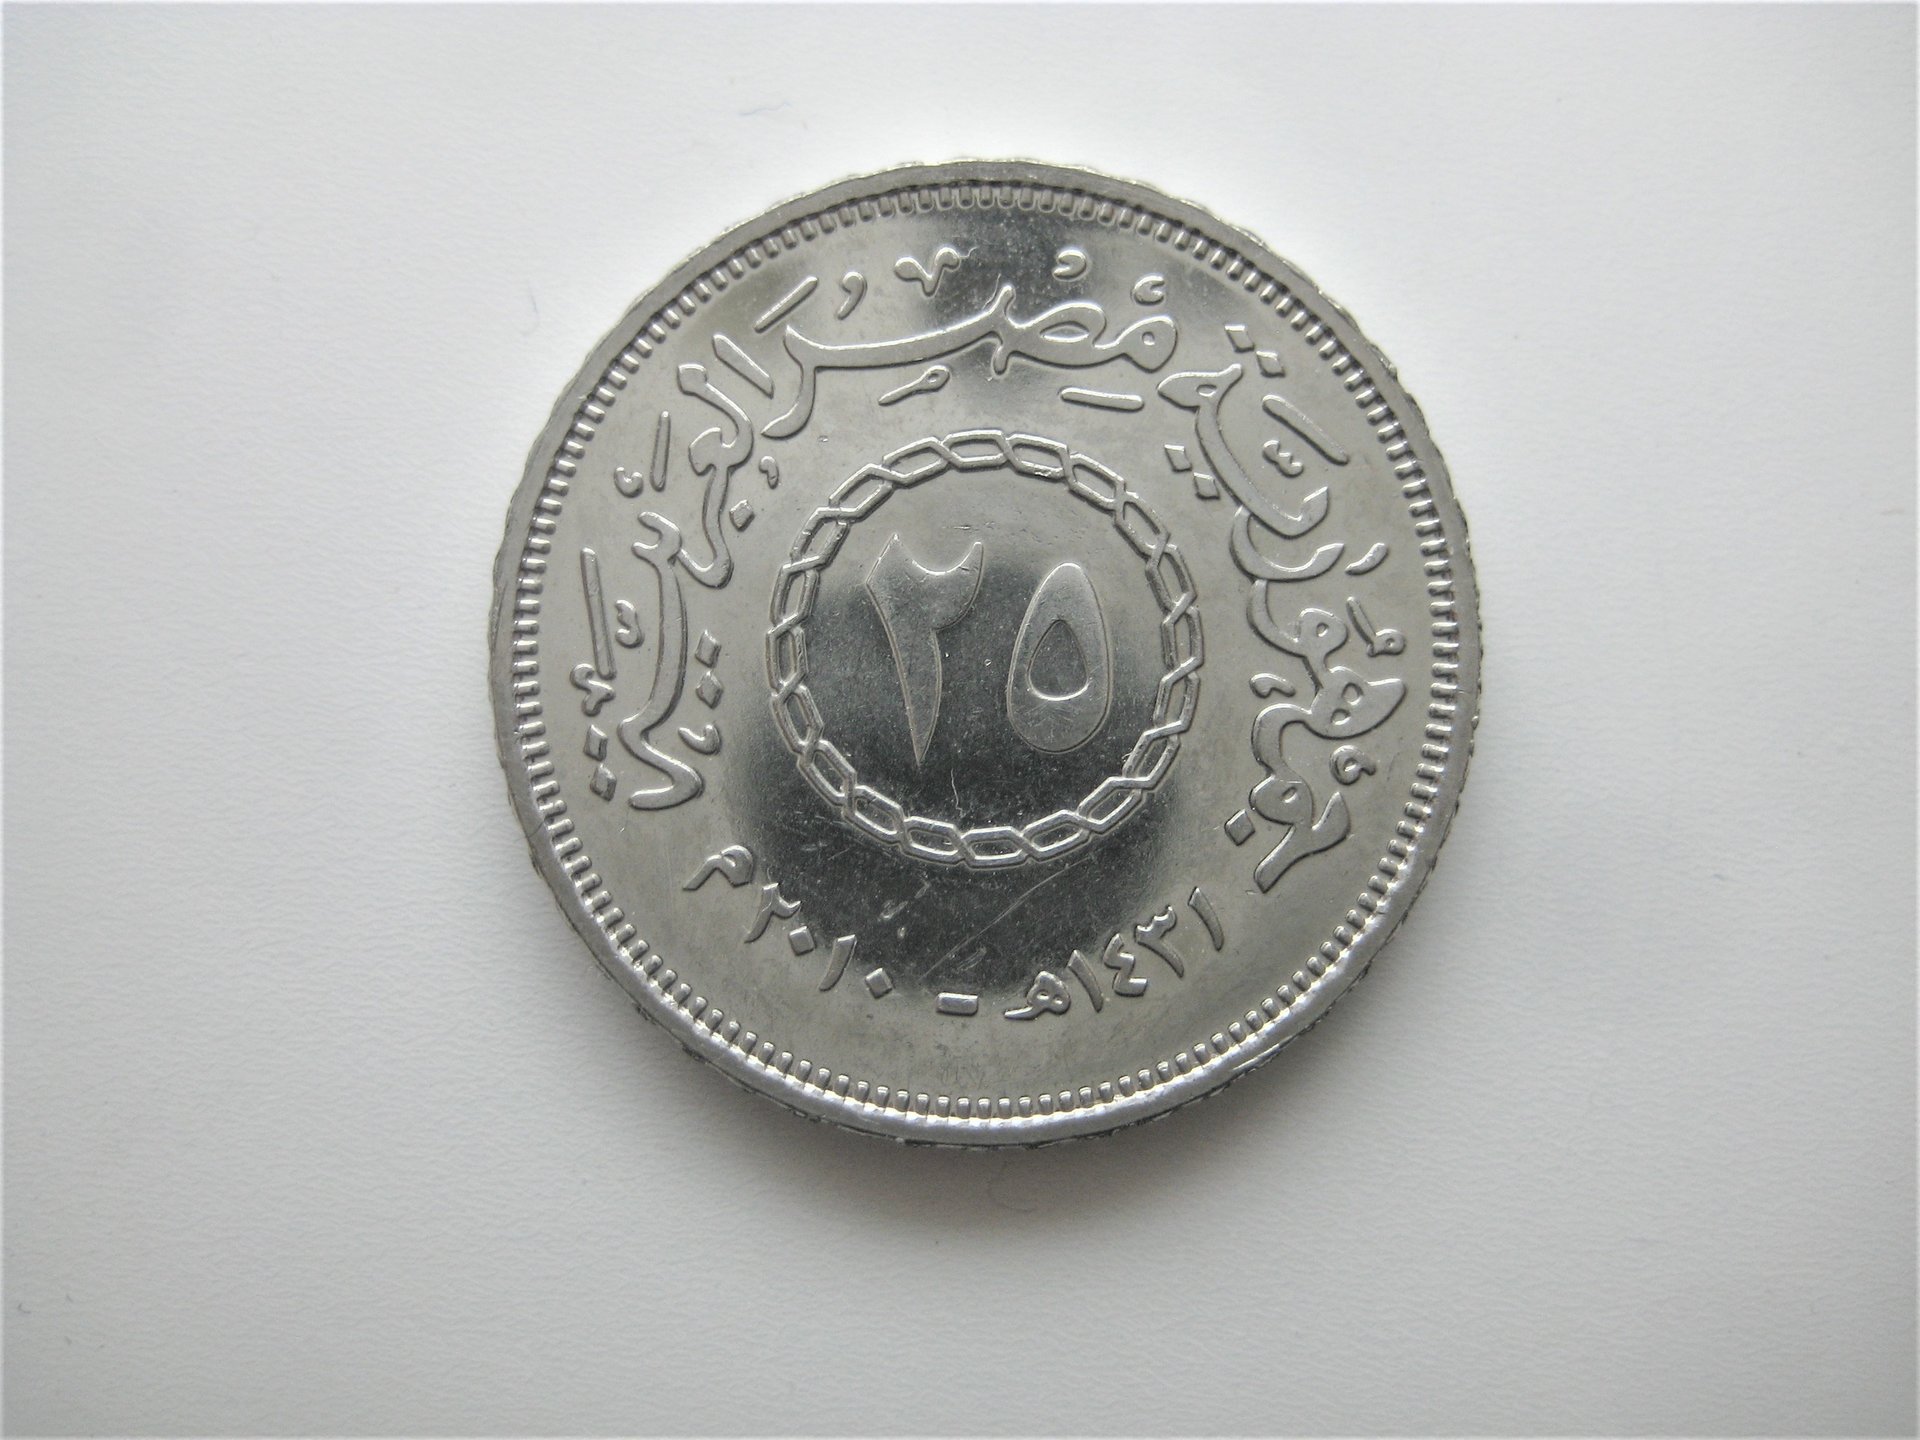 Egyptian Silver-colored 25 Piastres Coin | Coin Talk